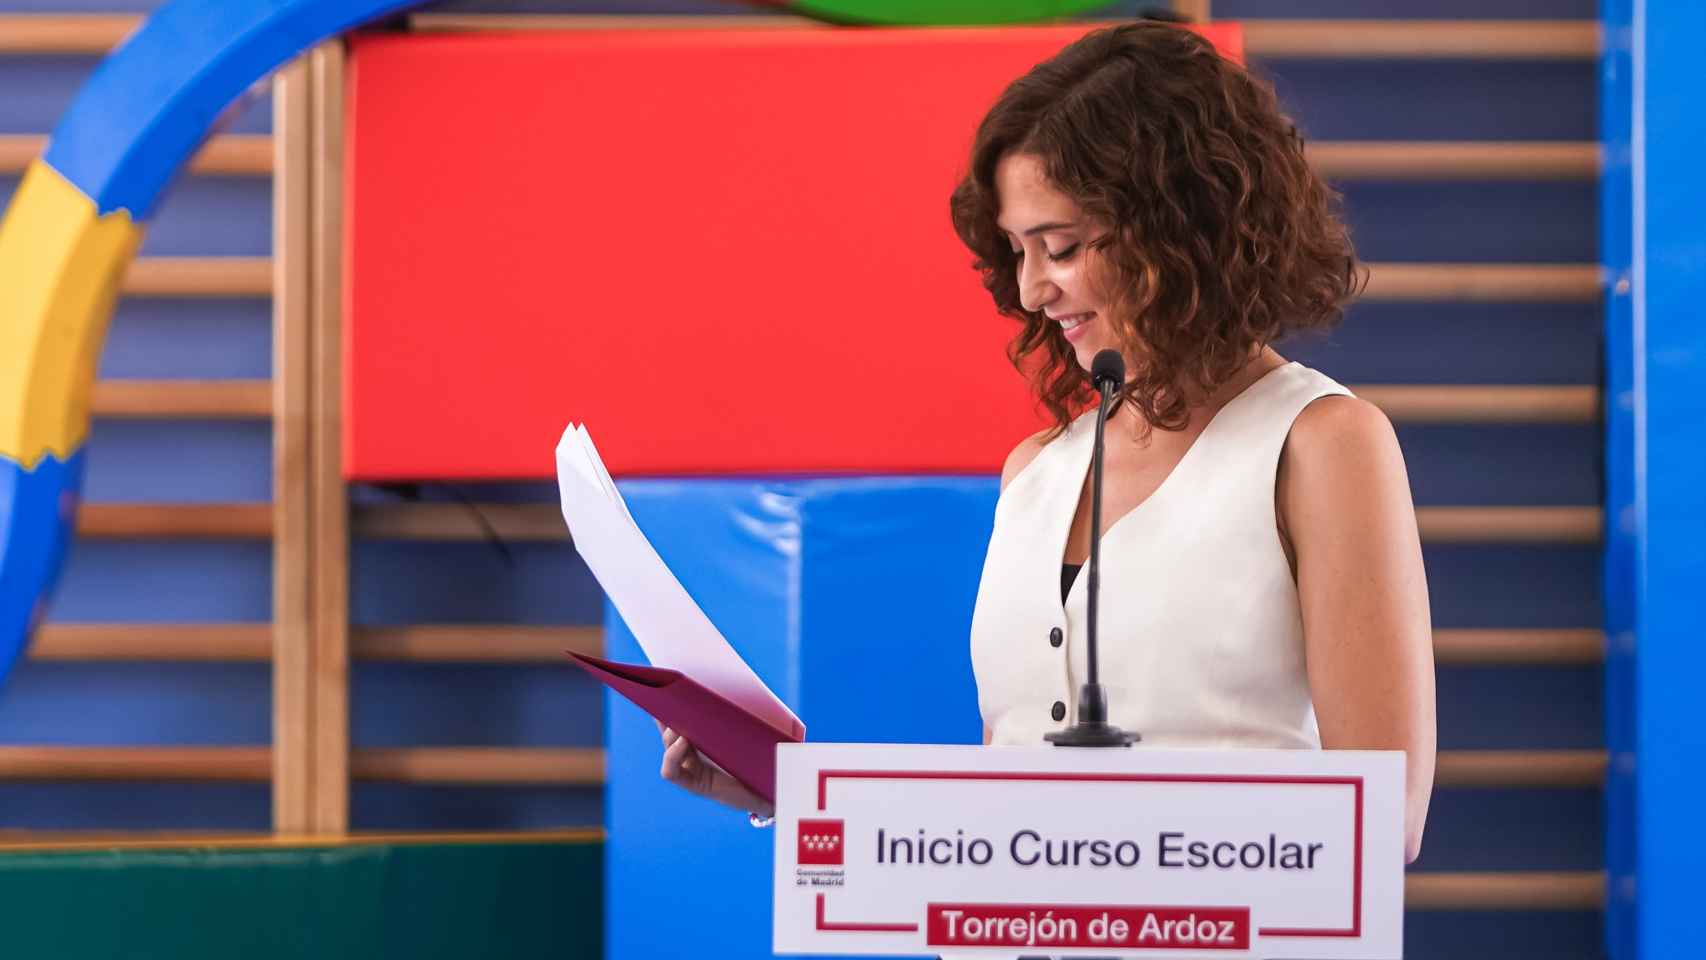 La presidenta, Isabel Díaz Ayuso, durante la inauguración del curso escolar en 2022 en Torrejón de Ardoz.